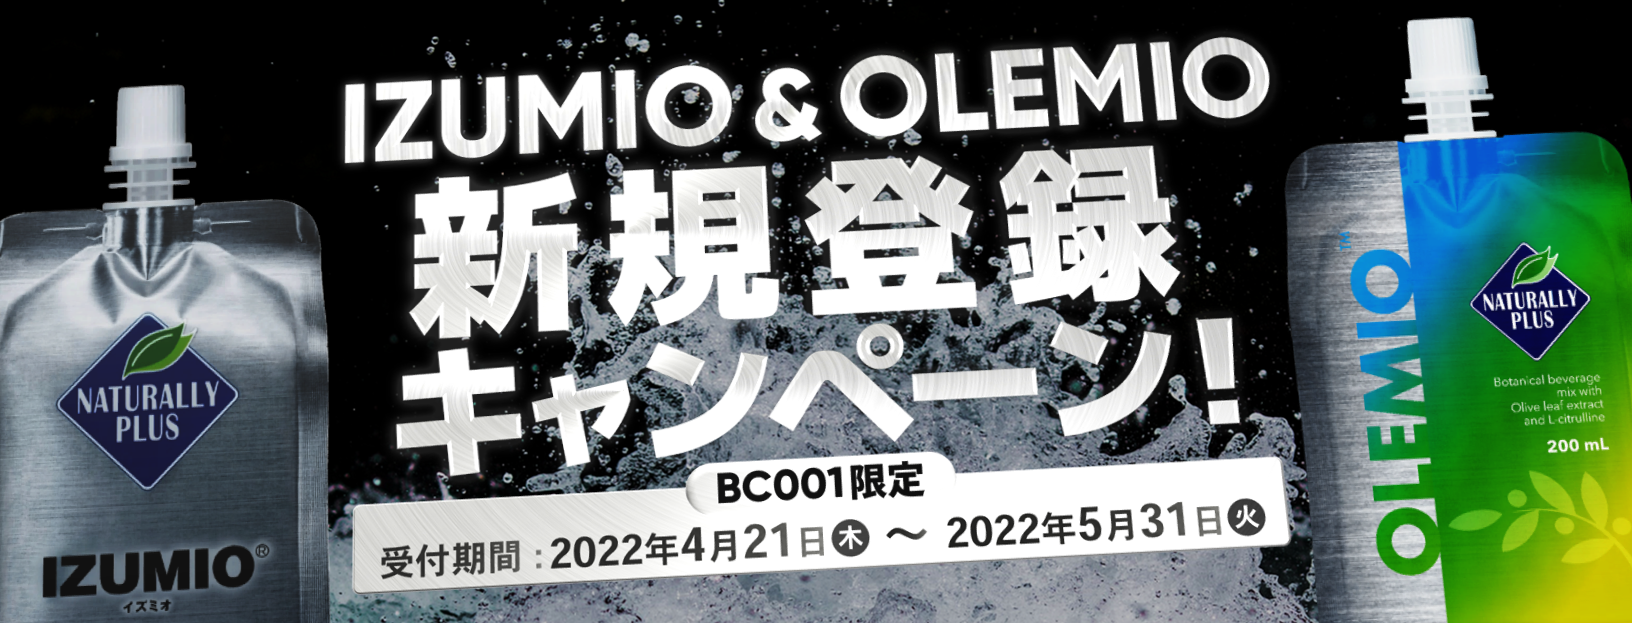 OLEMIO IZUMIO | 新規登録キャンペーン